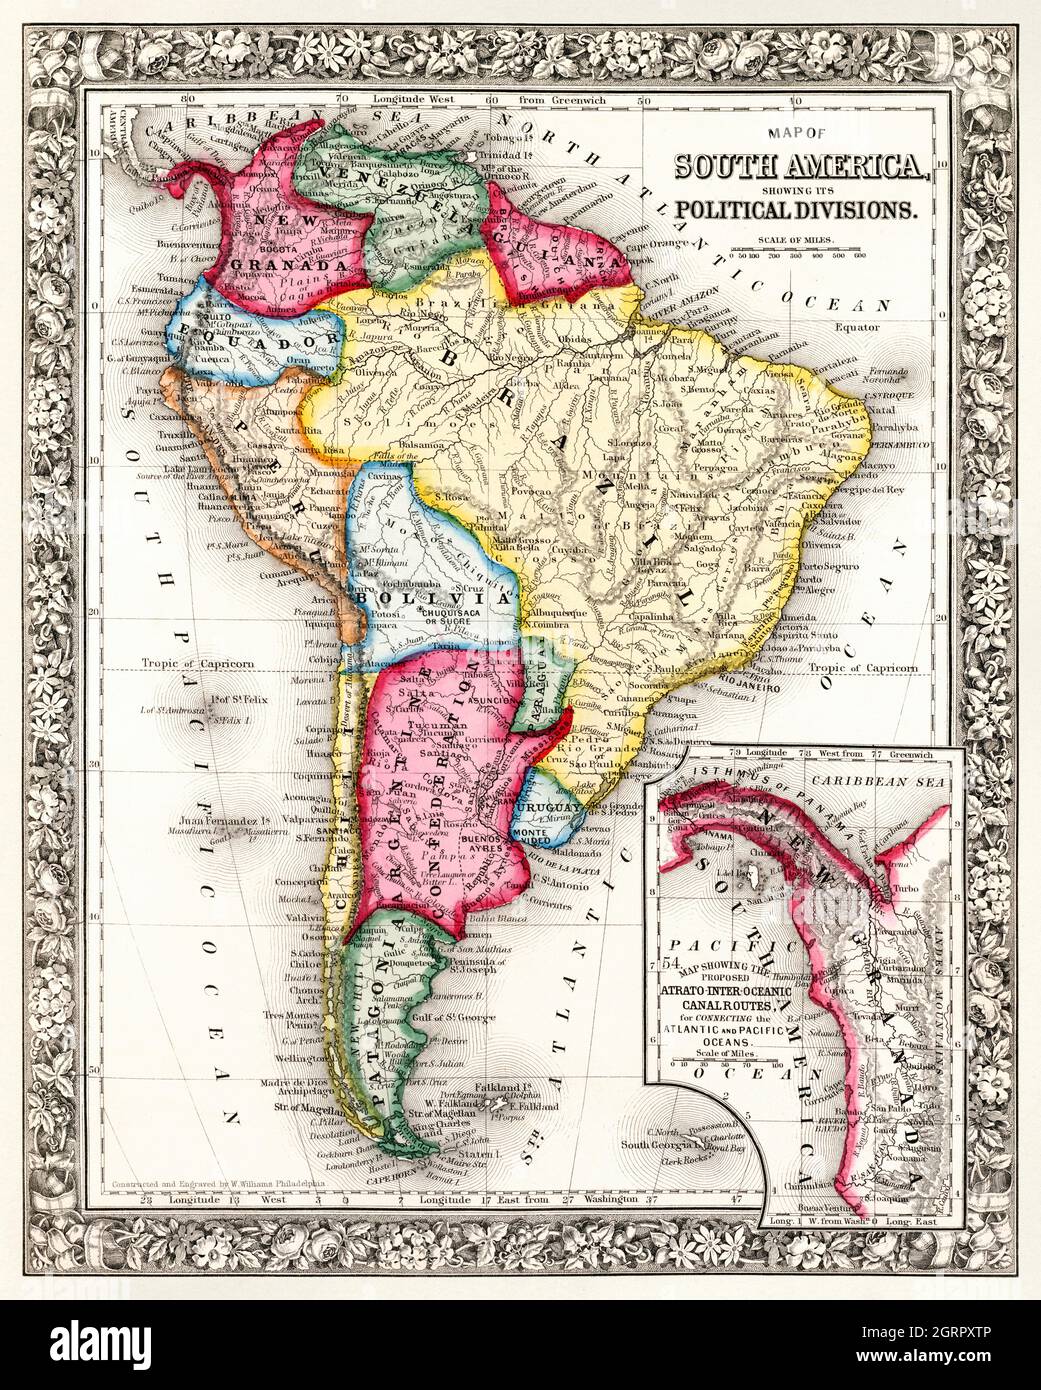 Carte de l'Amérique du Sud, montrant ses divisions politiques; carte montrant les routes canalées Atrato-inter-océaniques proposées, pour relier l'Atlantique et... Banque D'Images